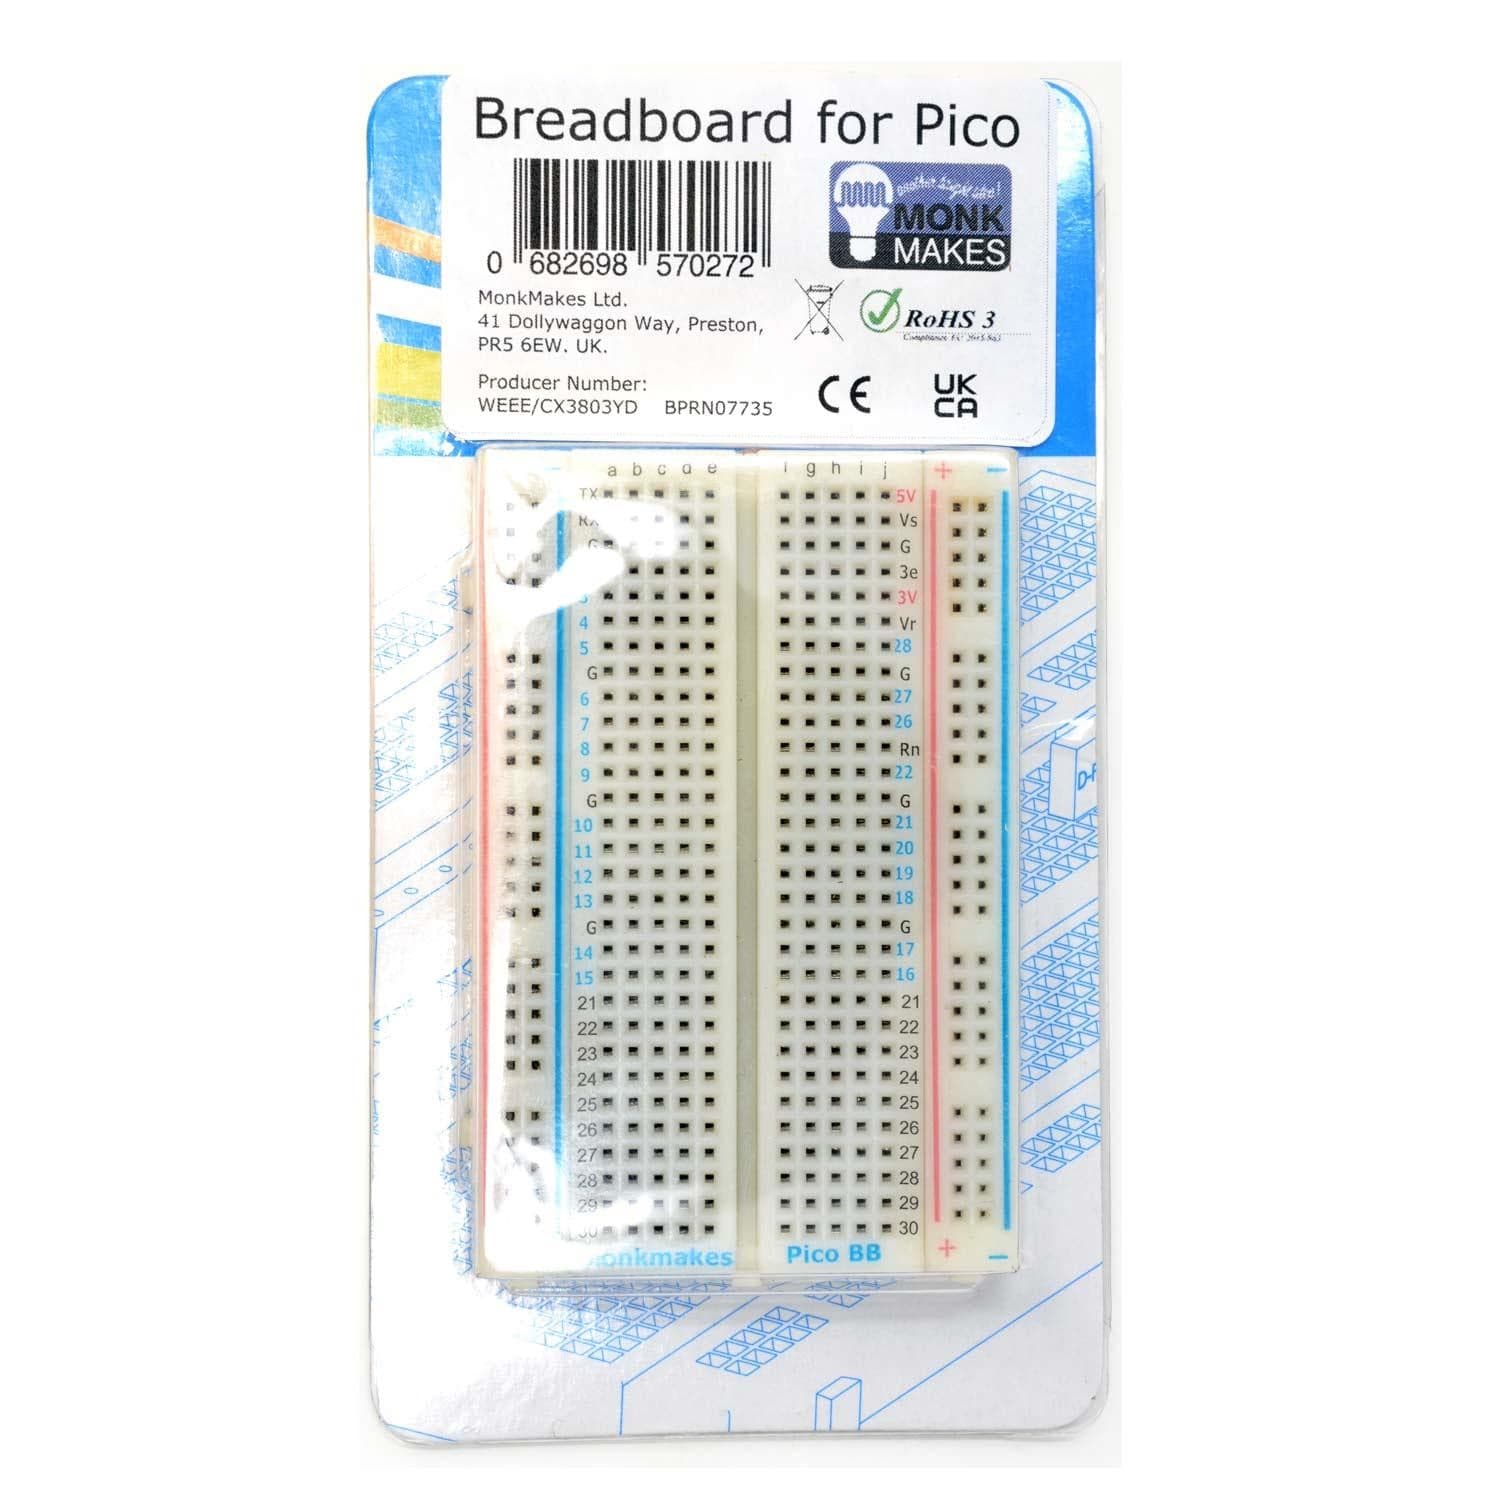 Breadboard for Pico - The Pi Hut